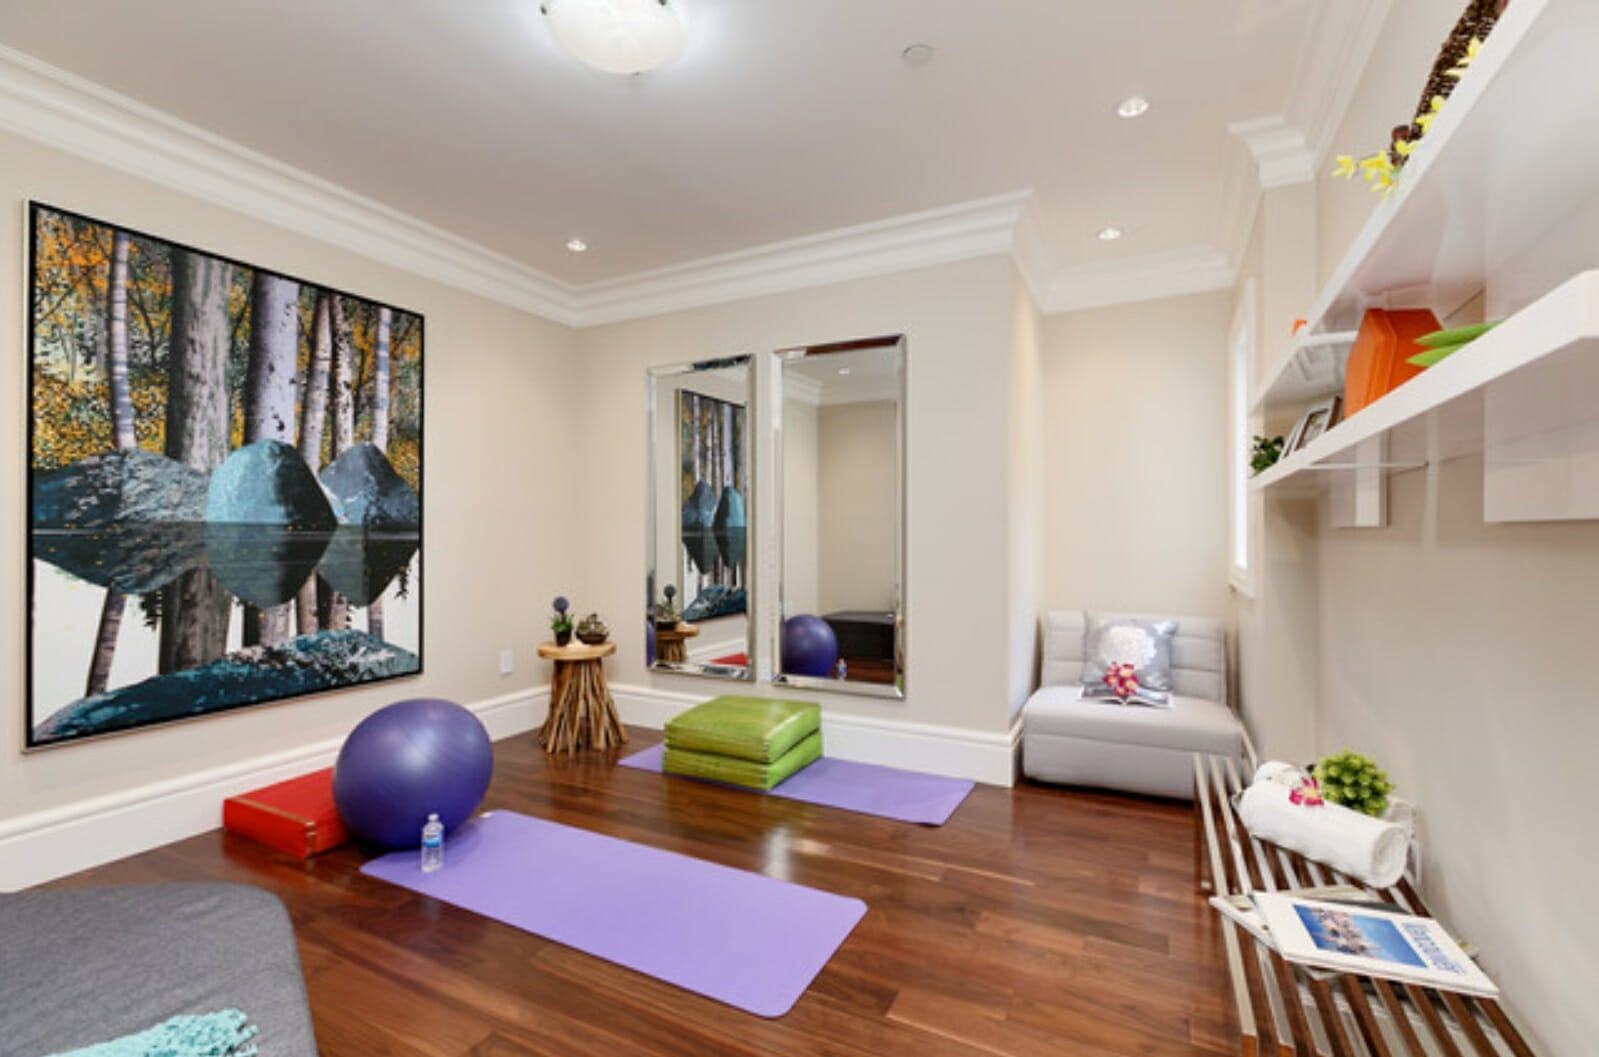 yoga spot in living room